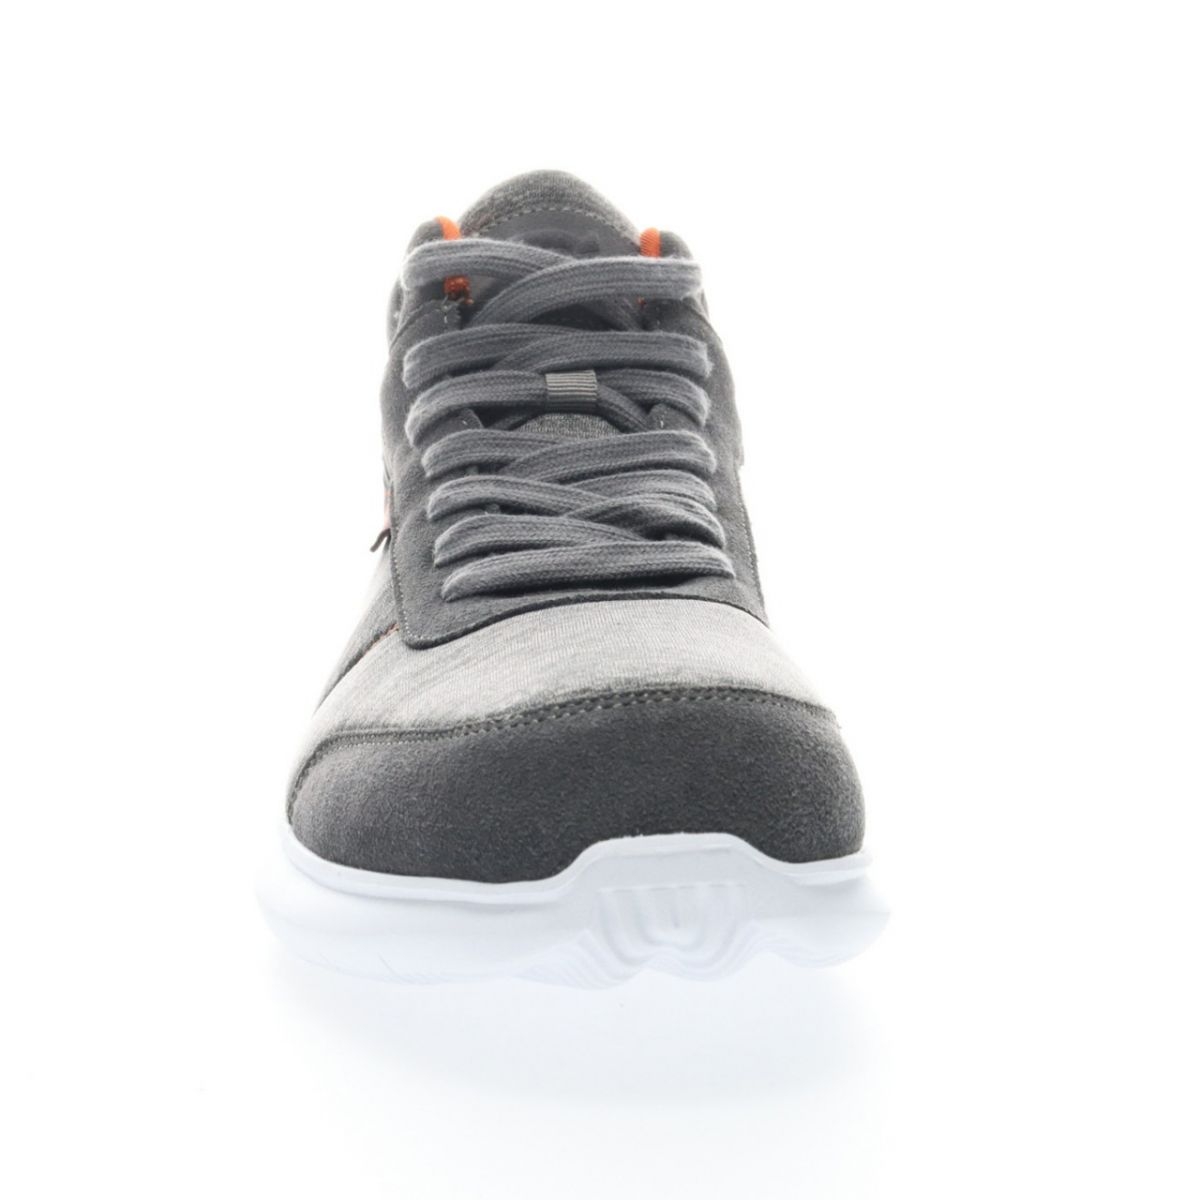 Propet Men's Viator Hi Sneaker Grey/Orange - MAA112MGOR Grey/orange - Grey/orange, 15 XX-Wide